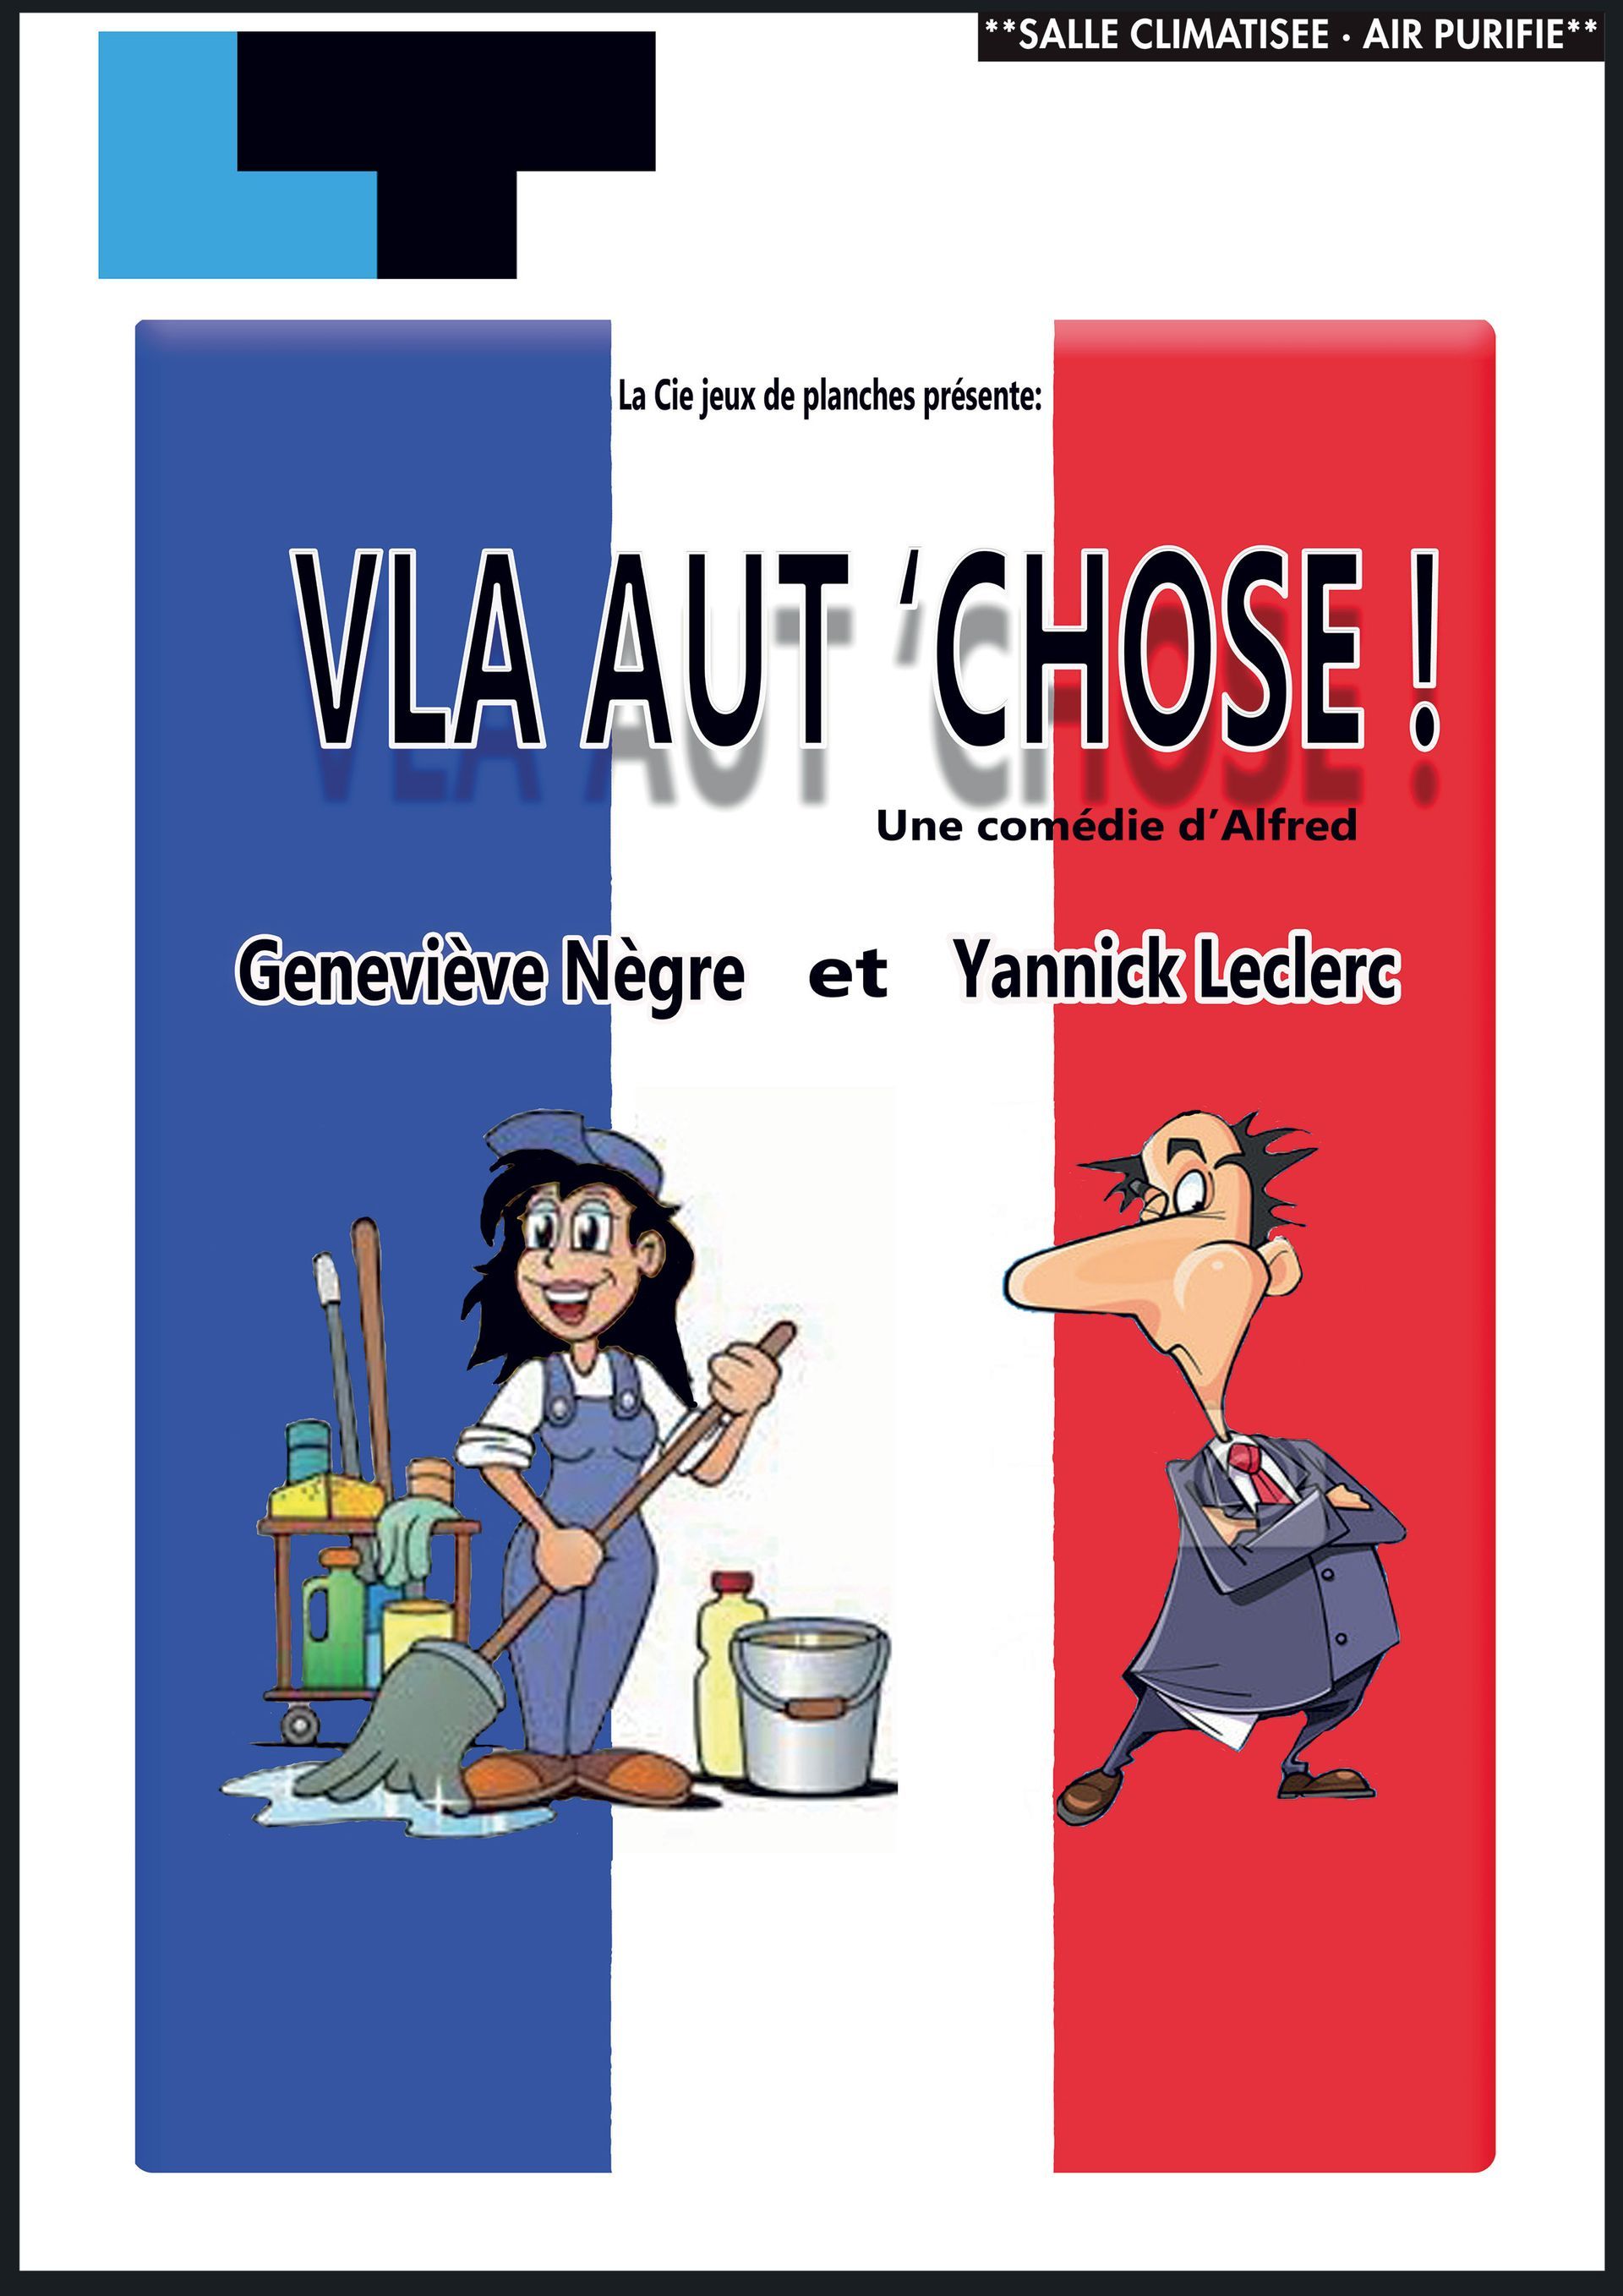 Une caricature d’un homme et d’une femme sur la couverture d’un livre avec le drapeau de la France.